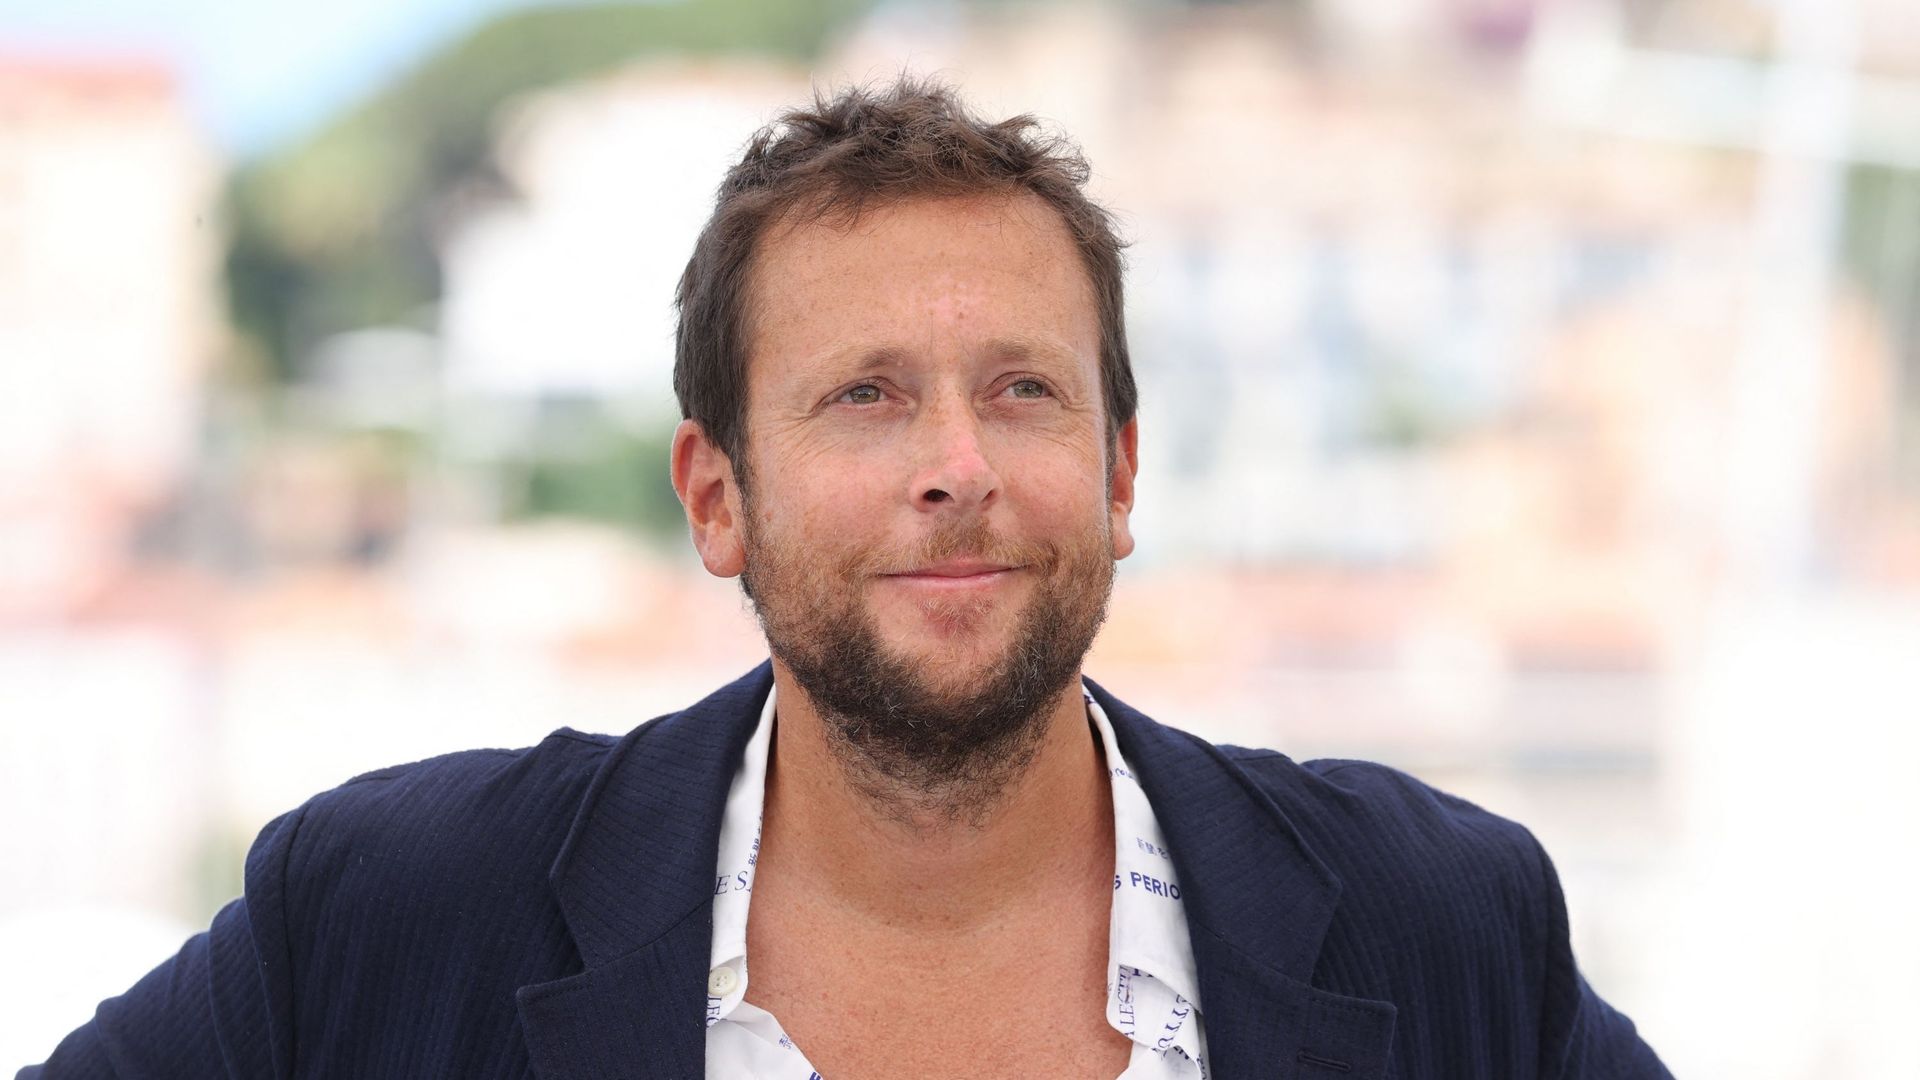 Joachim Lafosse à la présentation de son film "Les Intranquilles" à Cannes, en juillet 2021